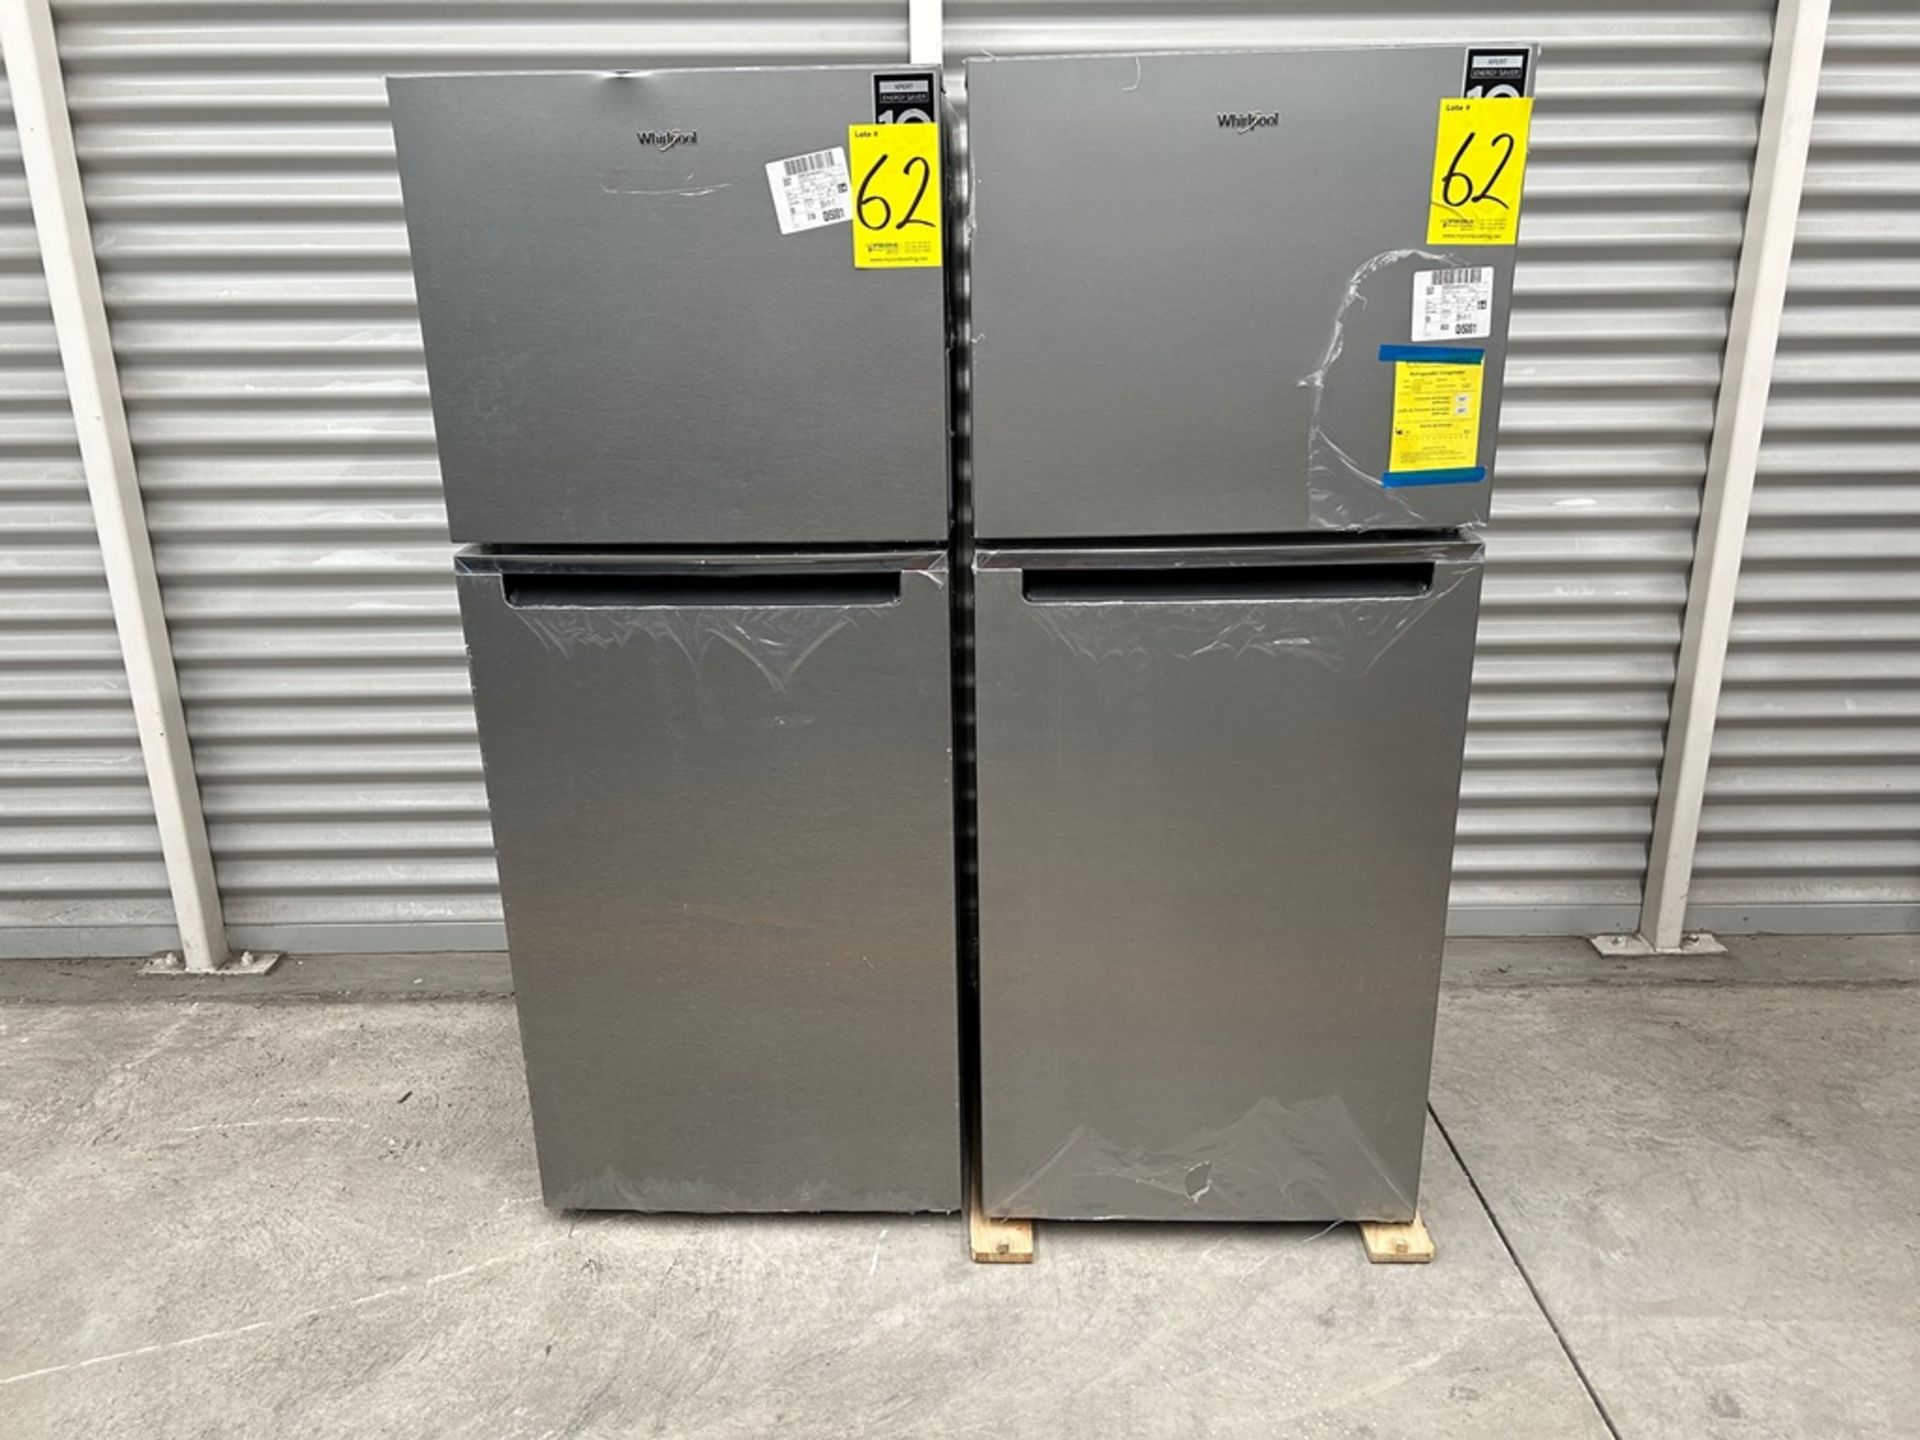 Lote de 2 refrigeradores contiene: 1 Refrigerador Marca WHIRPOOL, Modelo WT1230K, Serie 91306, Colo